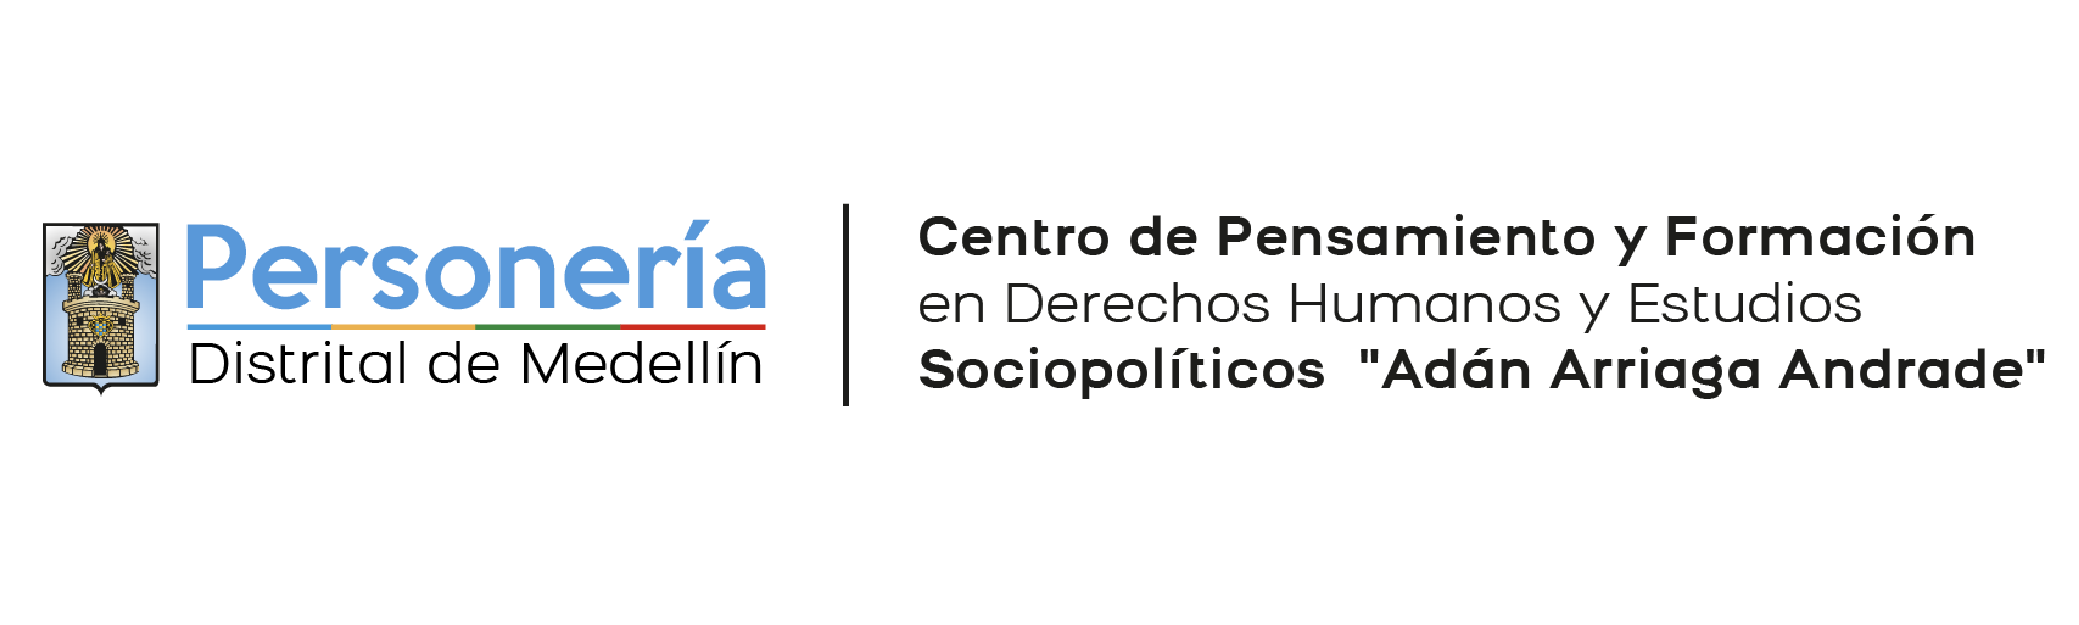 Centro de Pensamiento de la Personeria de Medellin